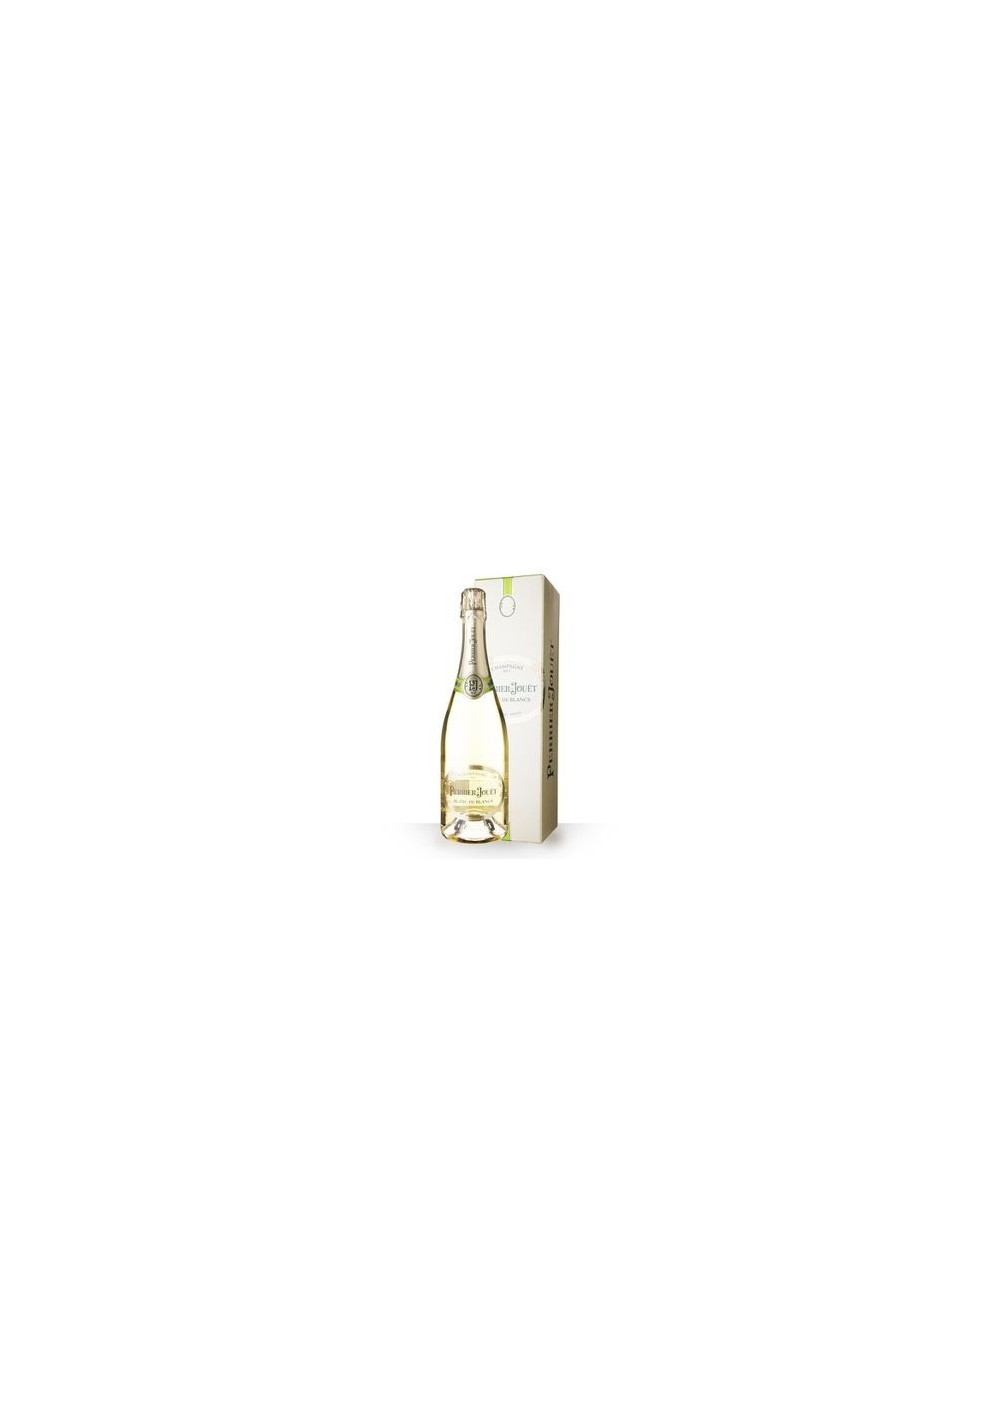 Champagne Perrier-Jouët blancs de blanc (75cl)